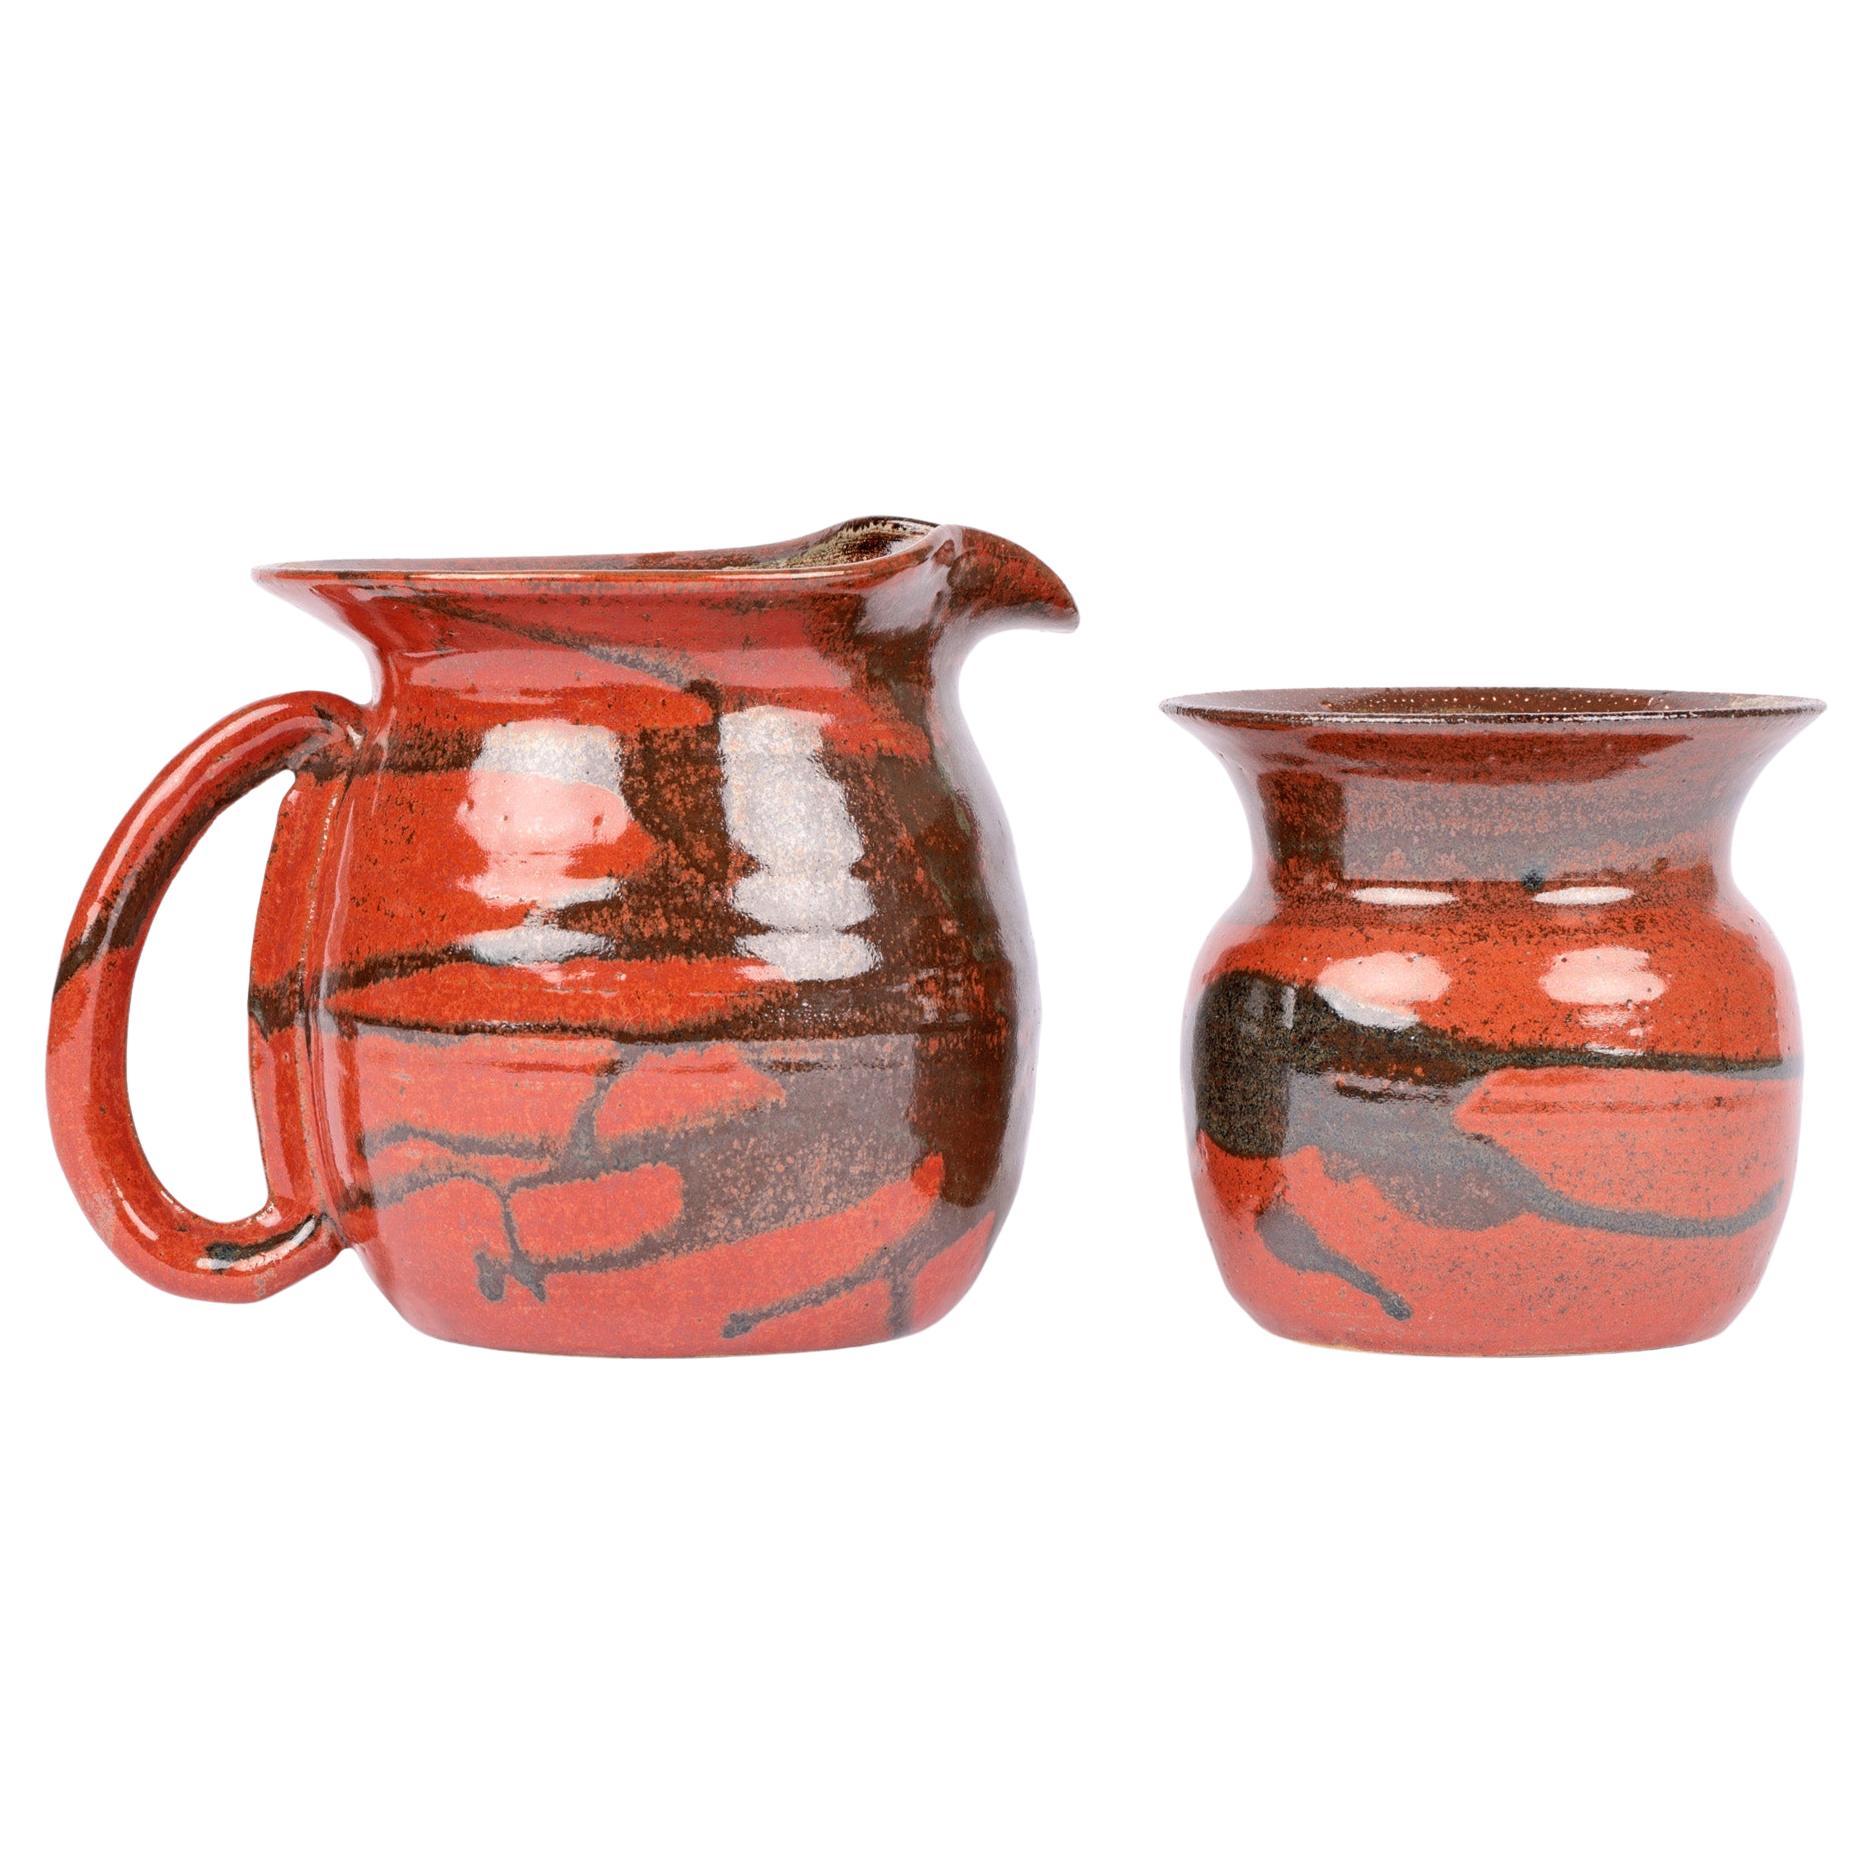 Pichet et vase en poterie de l'atelier de poterie Harbour d'Elizabeth Anderson